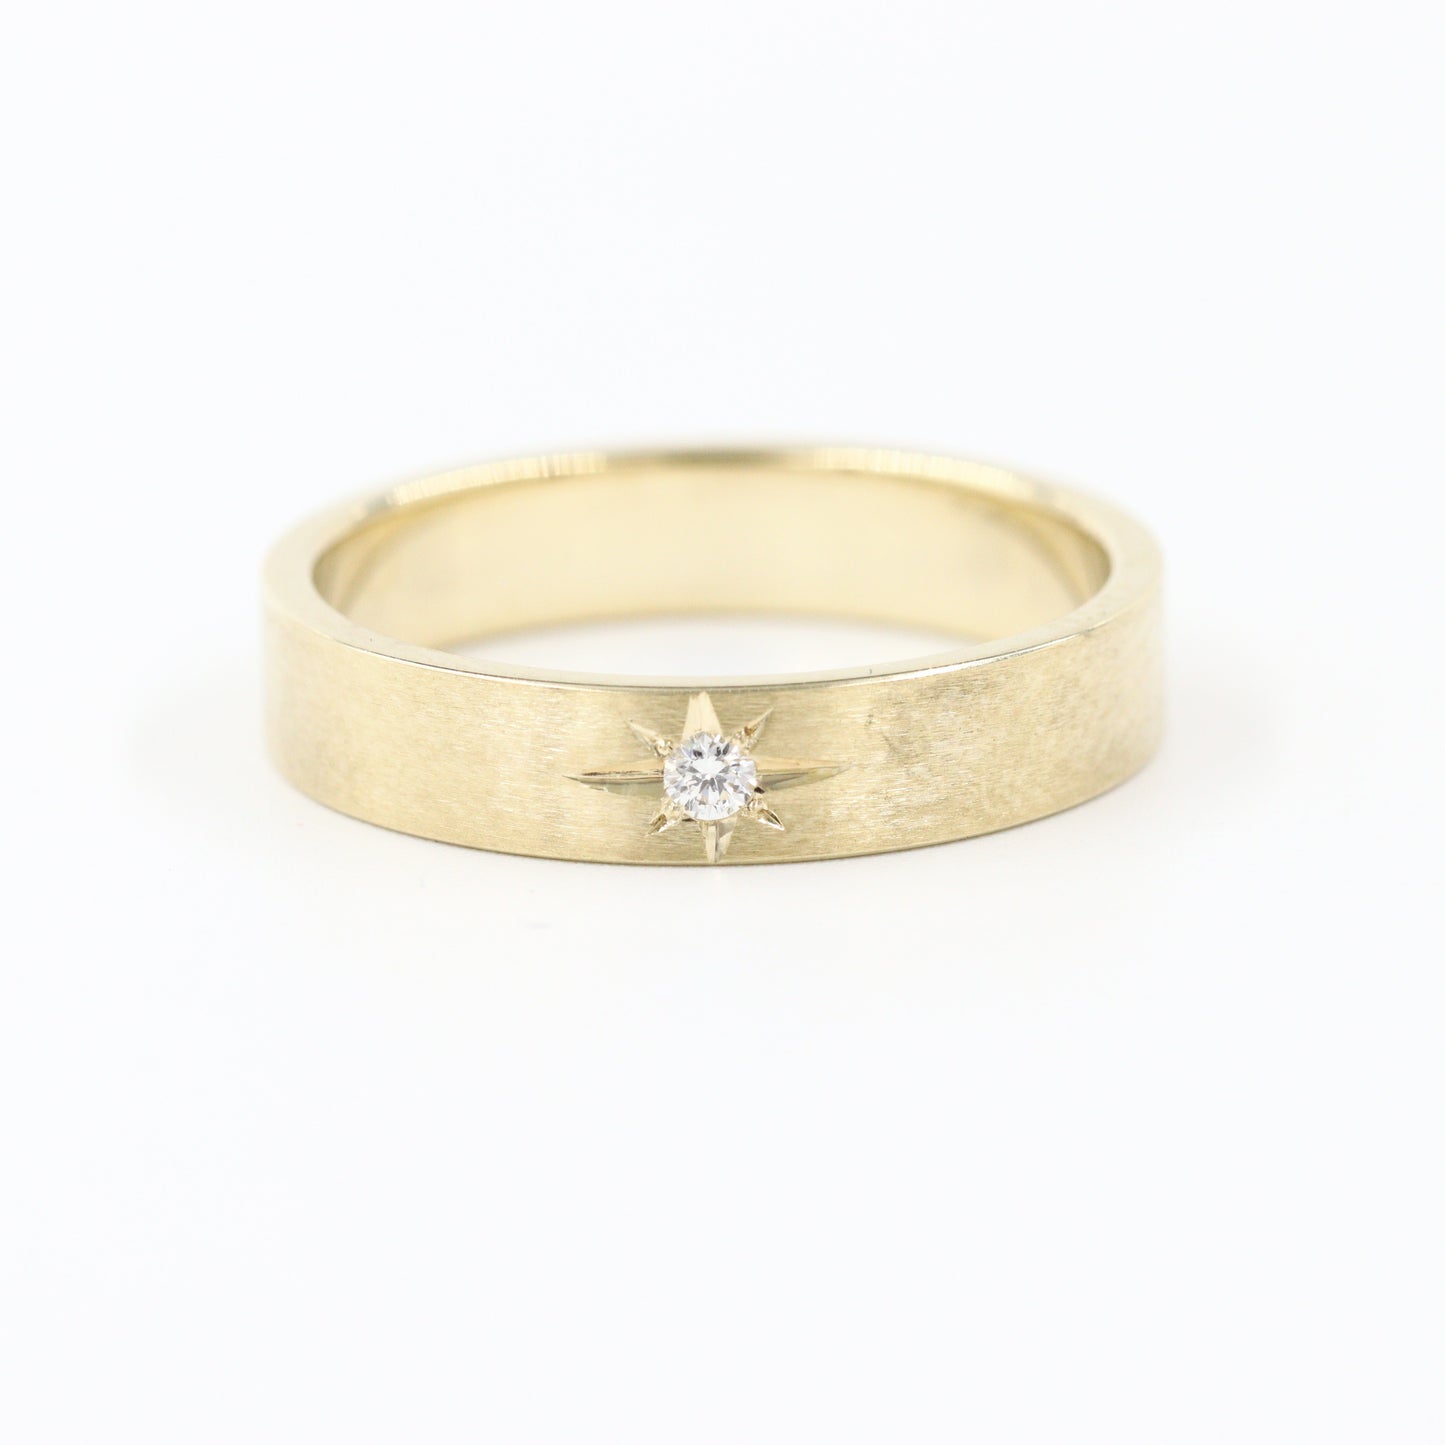 Polaris Star Diamond Ring/ 1 Star Diamond Ring/ 1 Star Diamond Wedding Ring/ 14K Star Ring/ 14K Polaris Flat Ring/ Width 4mm